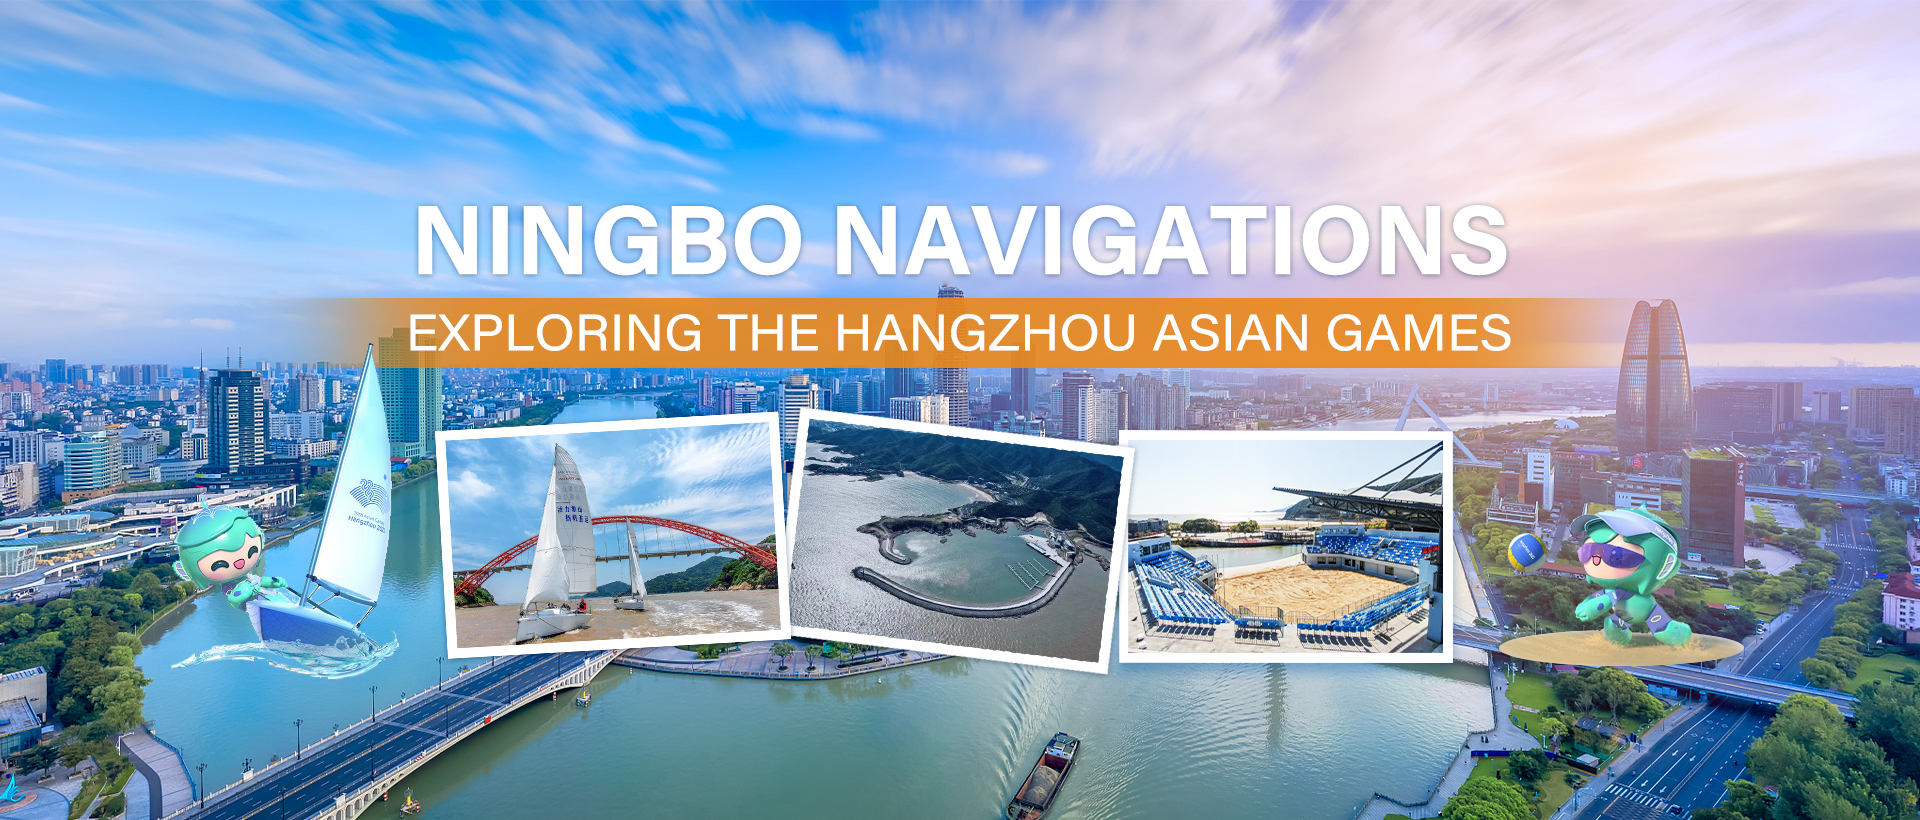 Ningbo Navigations: Exploring the Hangzhou Asian Games